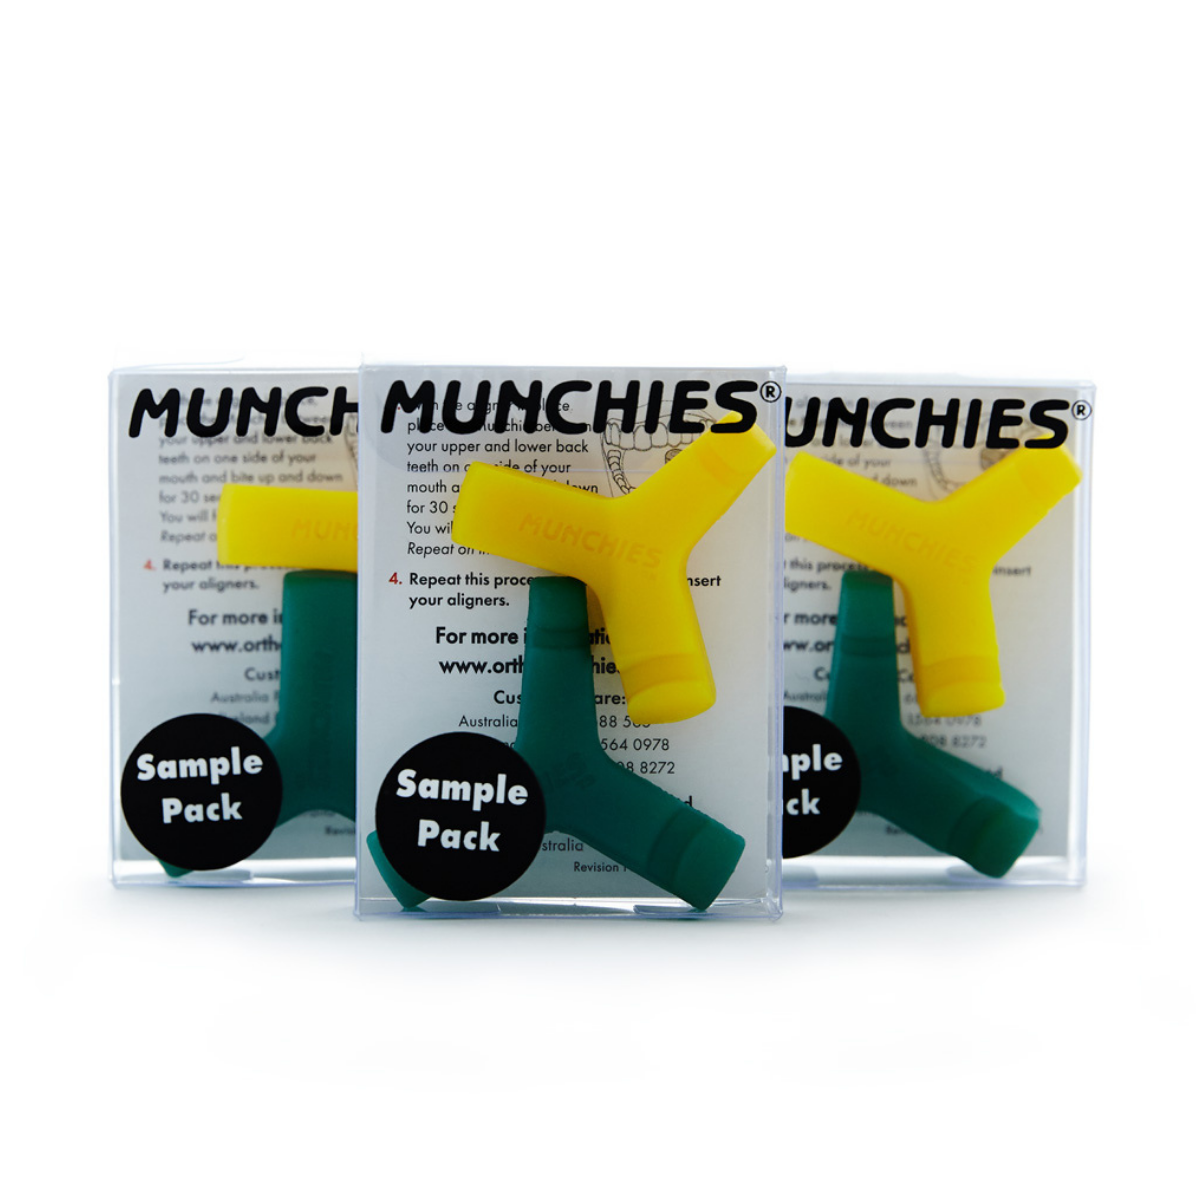 3 Munchies® 2 Piece Packs